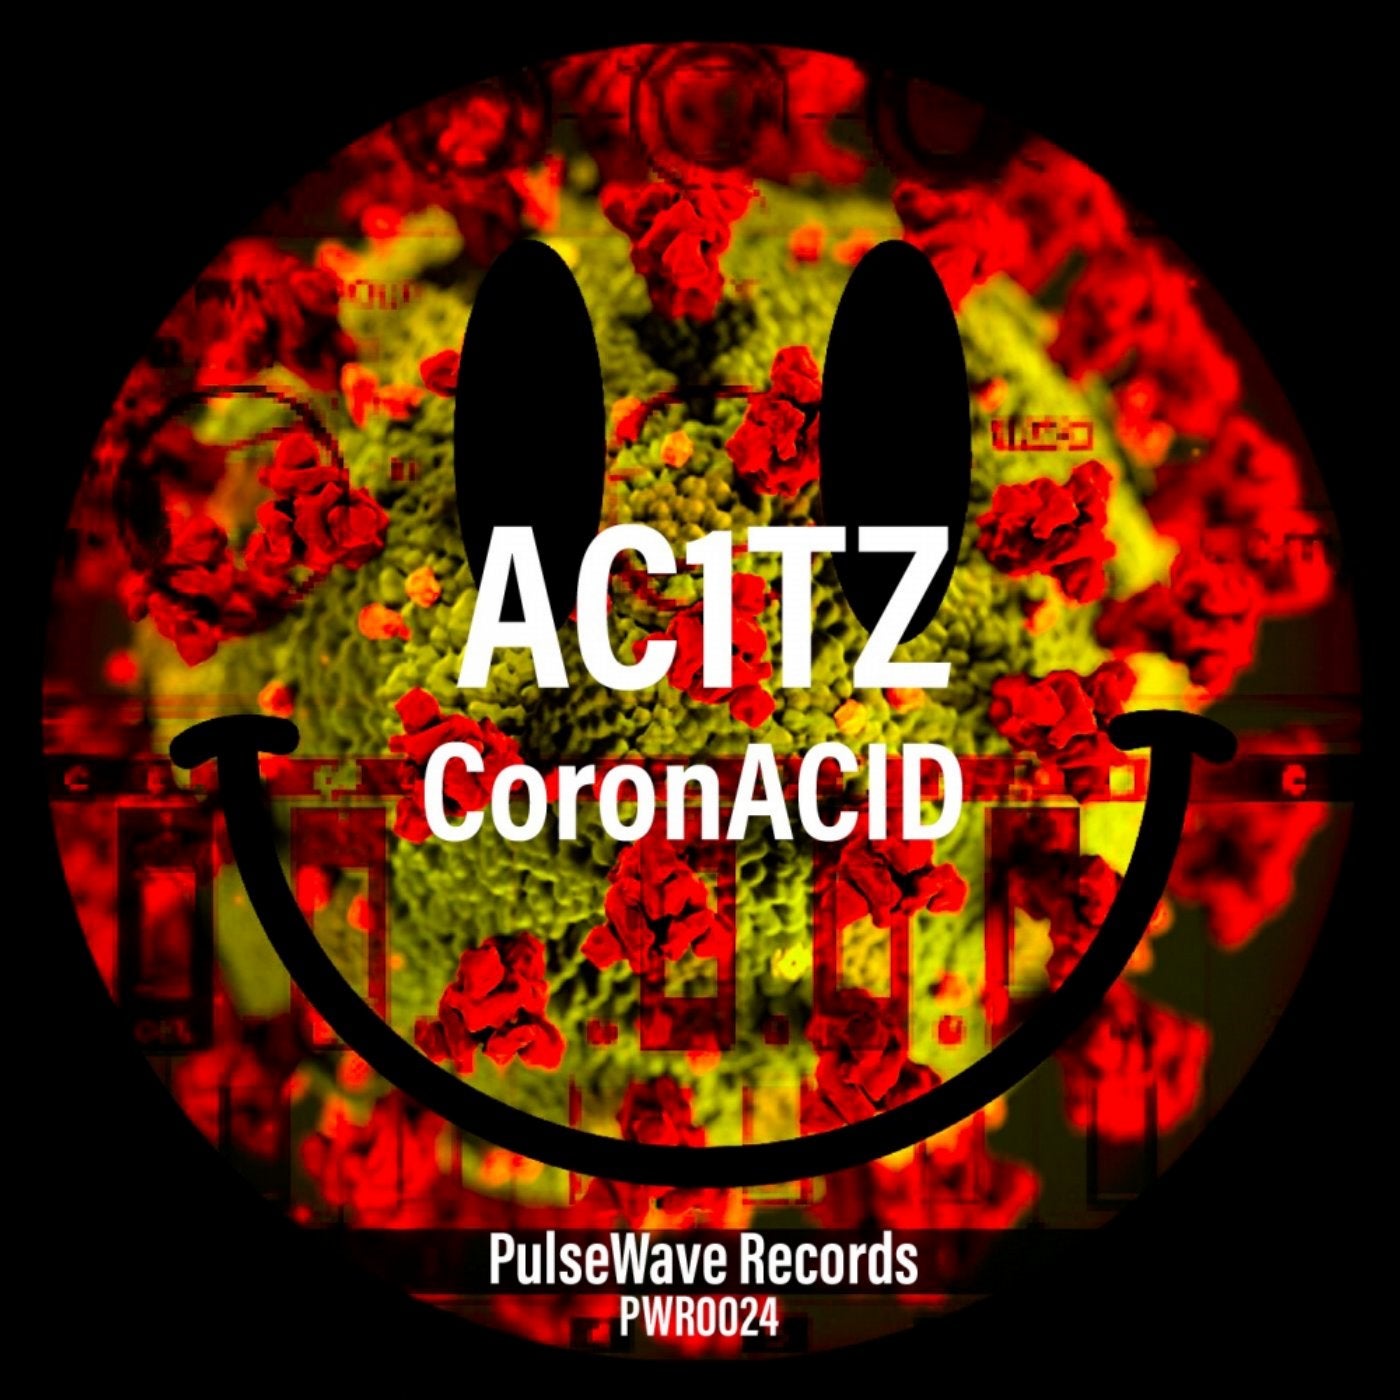 Coron Acid